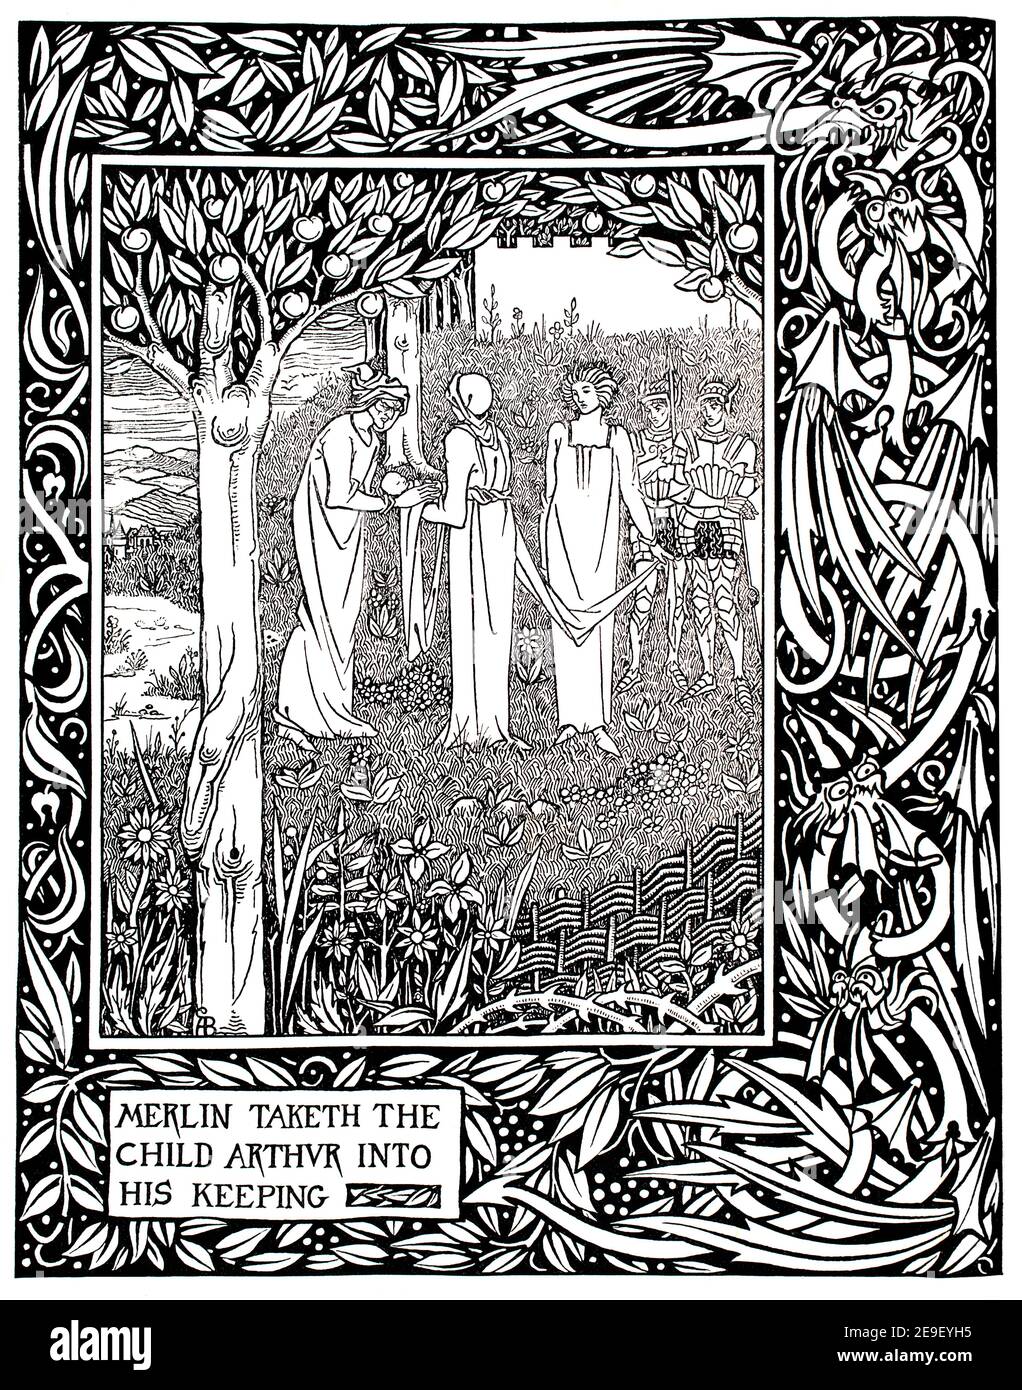 Merlin a pris l'enfant Arthur dans sa garde, de Dent & Co's 1892 Morte d'Arthur de Thomas Malory, en dessinant dans la ligne et le dessin de lavage par Aubrey Beard Banque D'Images